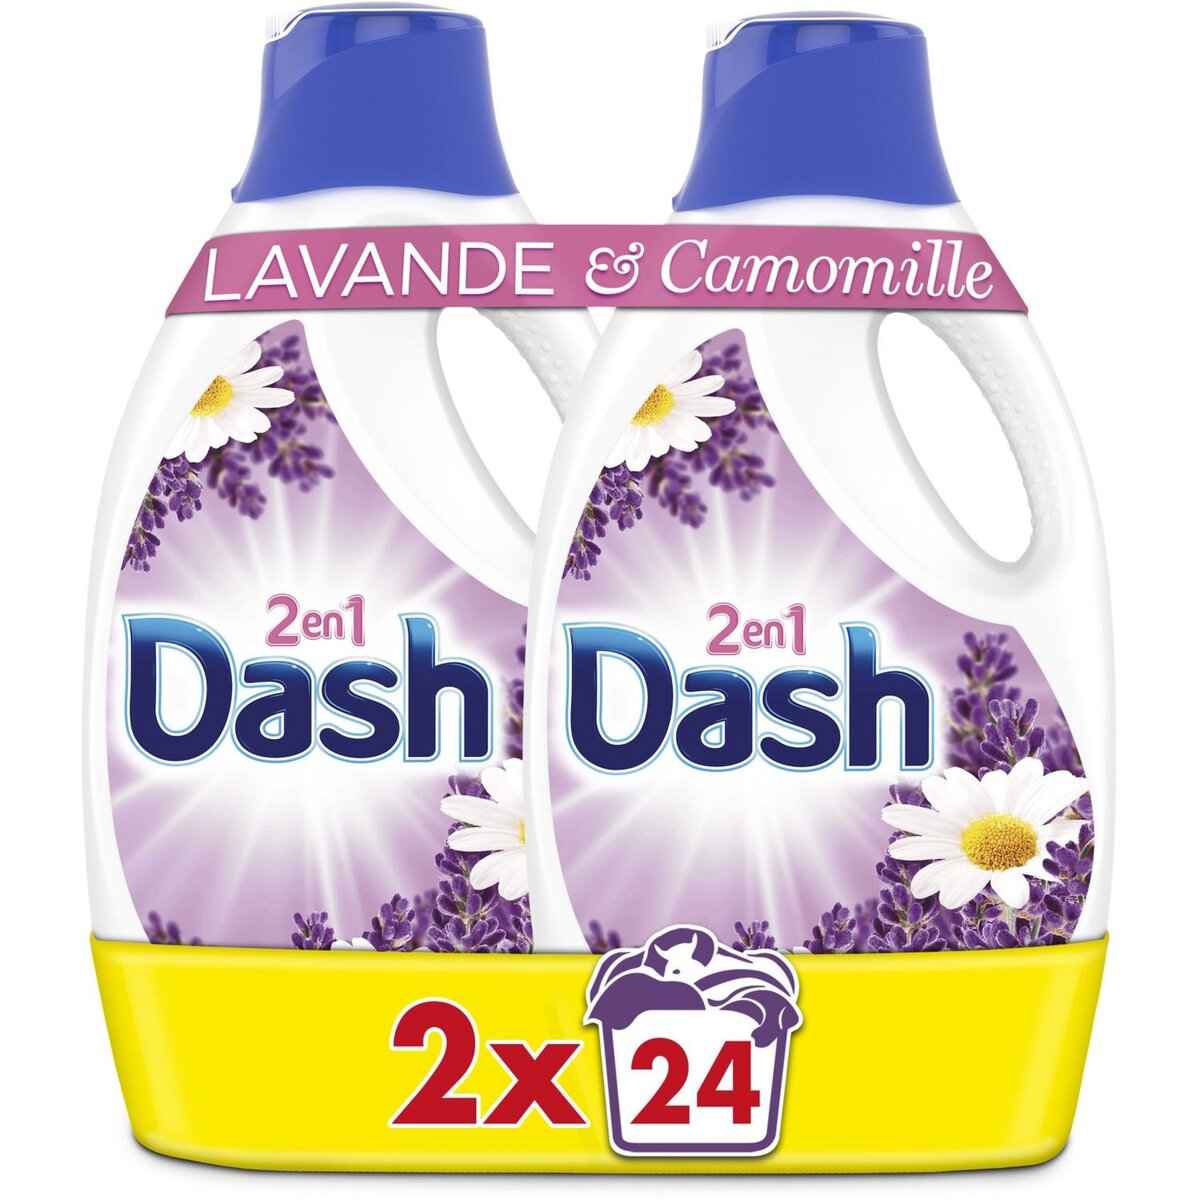 La variété des parfums Dash 2en1